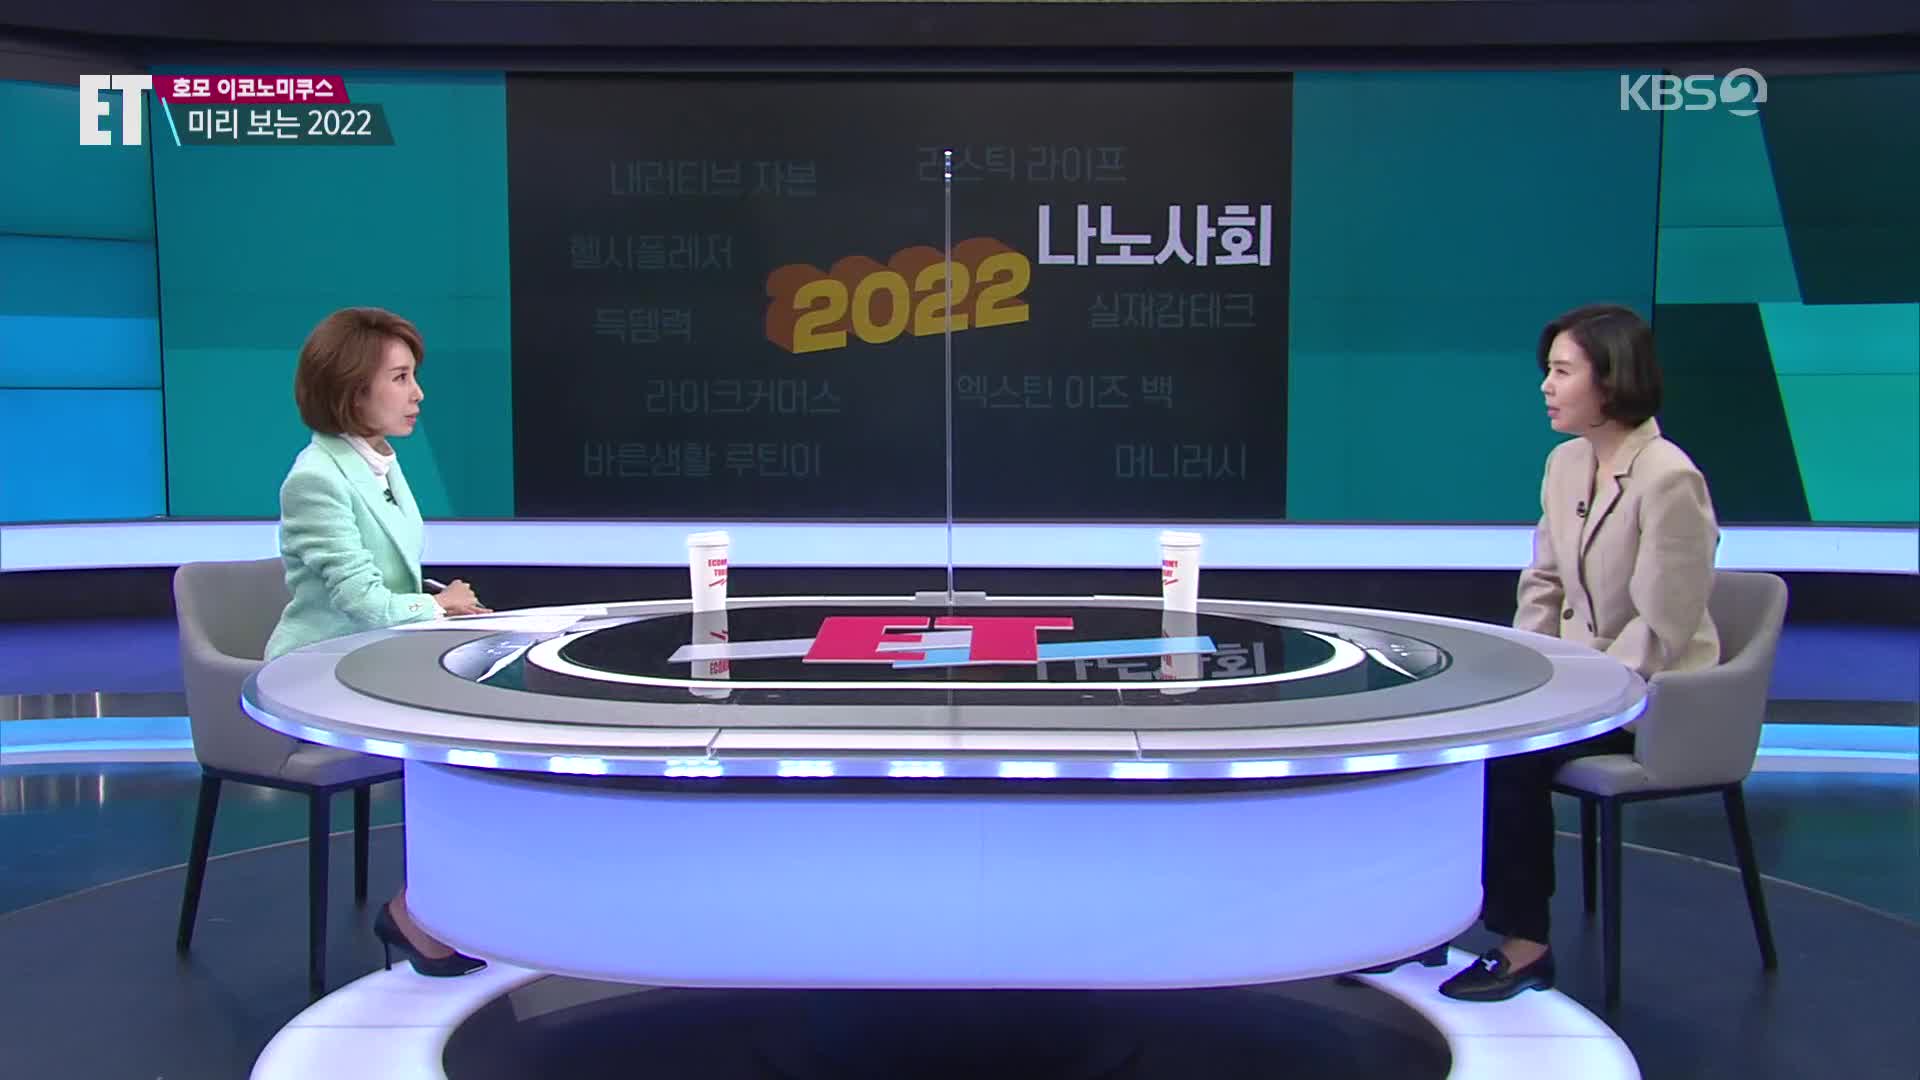 [ET] 미리 보는 2022…미국엔 골드러시, 한국엔 ‘머니러시’